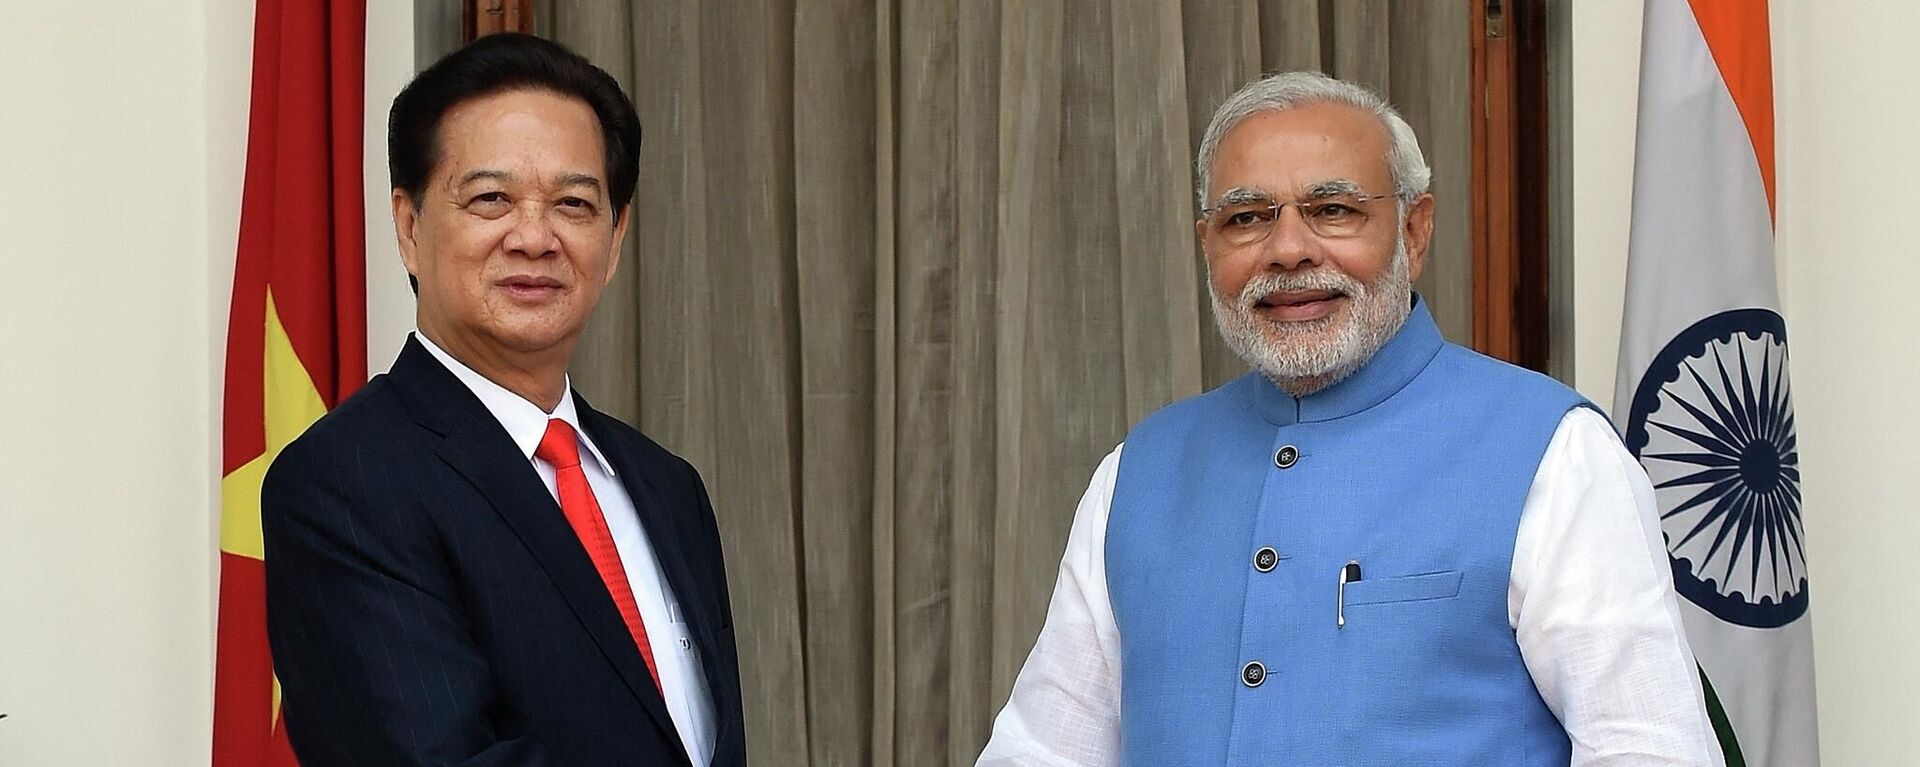 Thủ tướng Ấn Độ Narendra Modi và Thủ tướng Việt Nam Nguyễn Tấn Dũng bắt tay trước cuộc hội đàm tại New Delhi - Sputnik Việt Nam, 1920, 09.06.2022